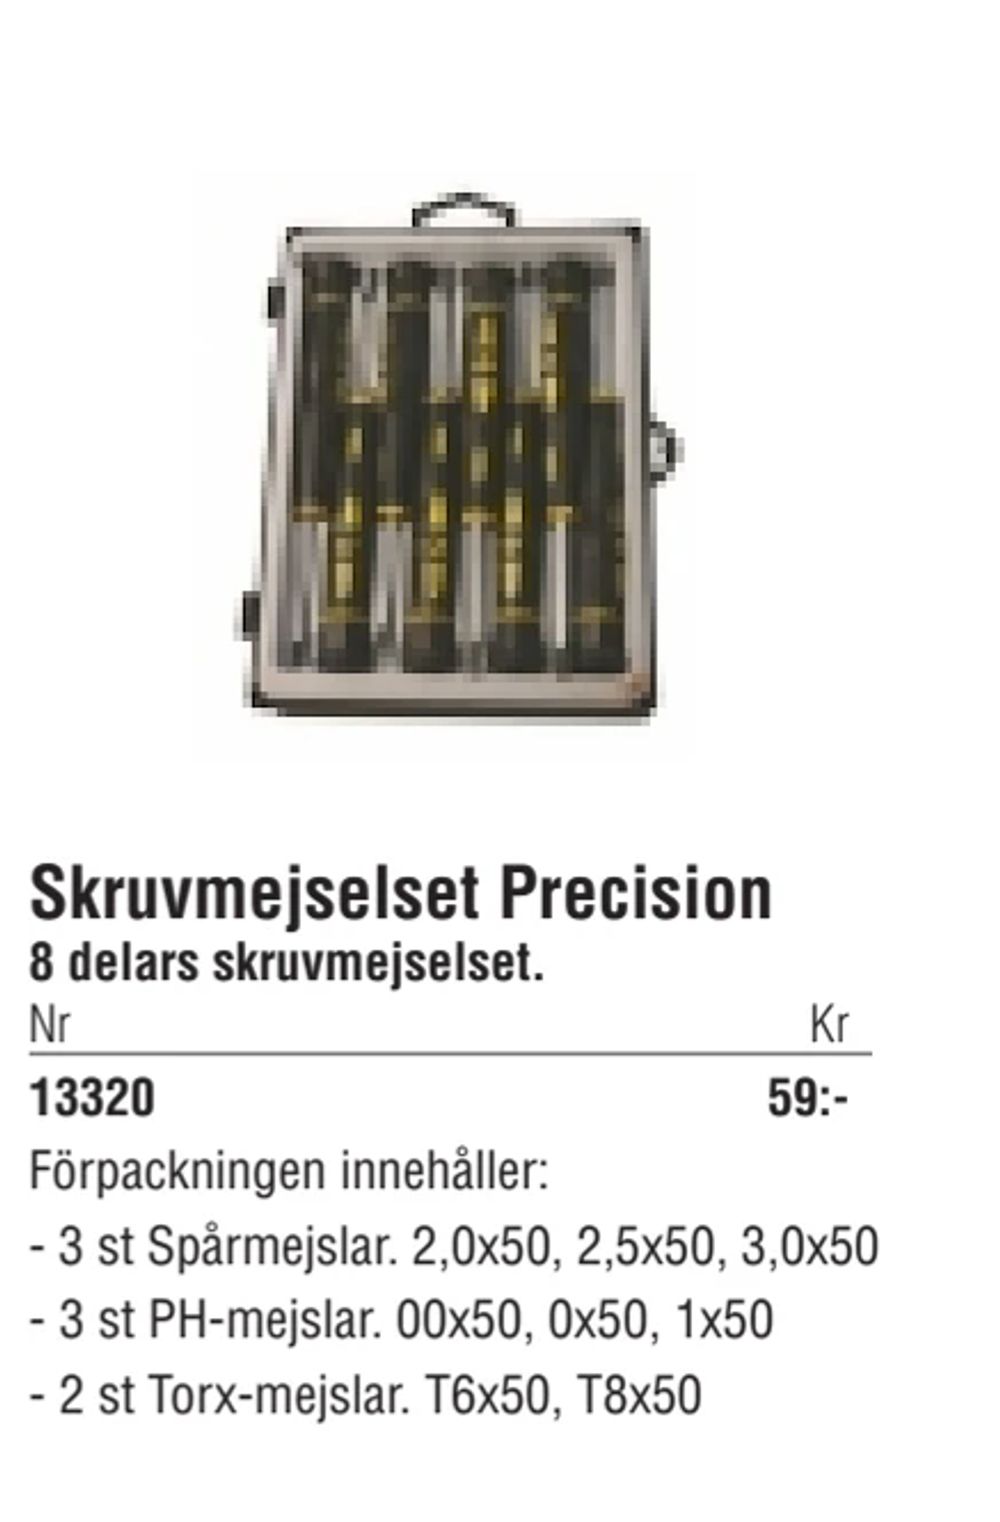 Erbjudanden på Skruvmejselset Precision från Erlandsons Brygga för 59 kr